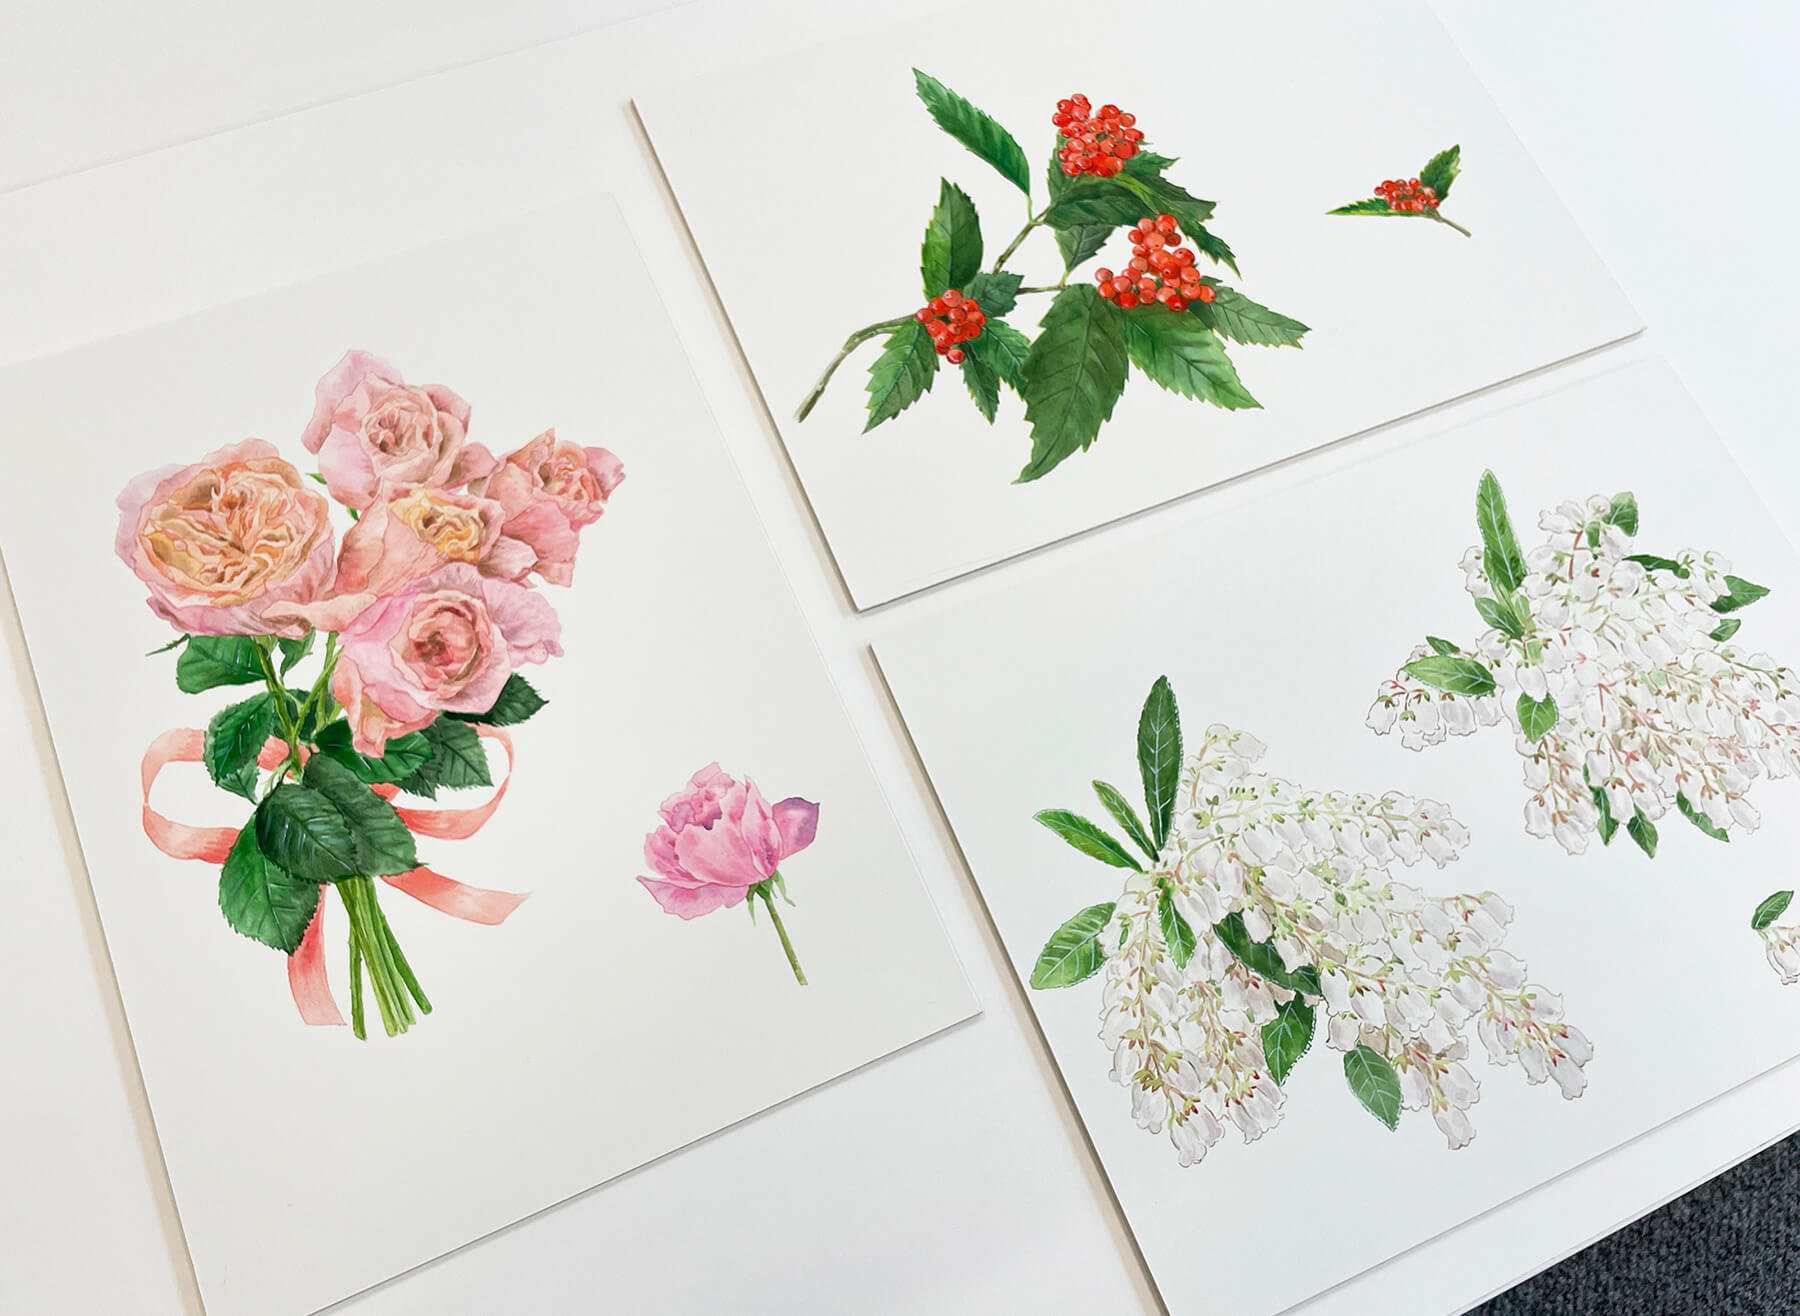 「おもてなしの花シリーズ 第19集」の原画。左から時計まわりに、バラ、センリョウ、アセビ